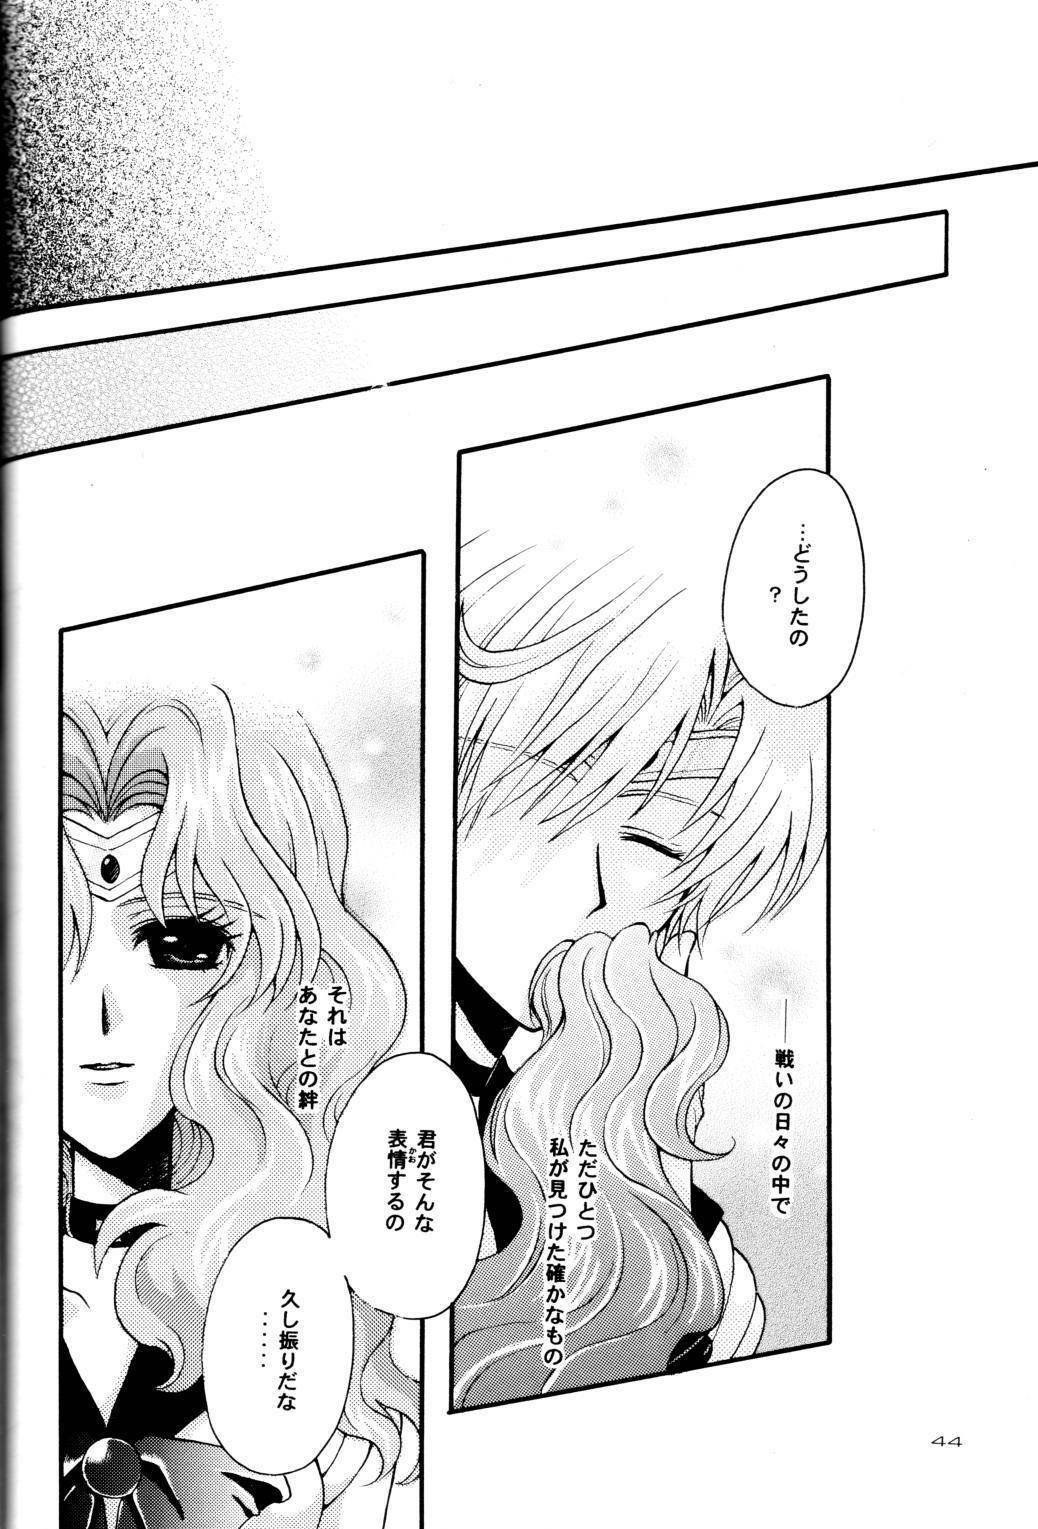 (CR31) [Kotori Jimusho (Sakura Bunchou)] Ave Maris Stella (Bishoujo Senshi Sailor Moon) page 43 full